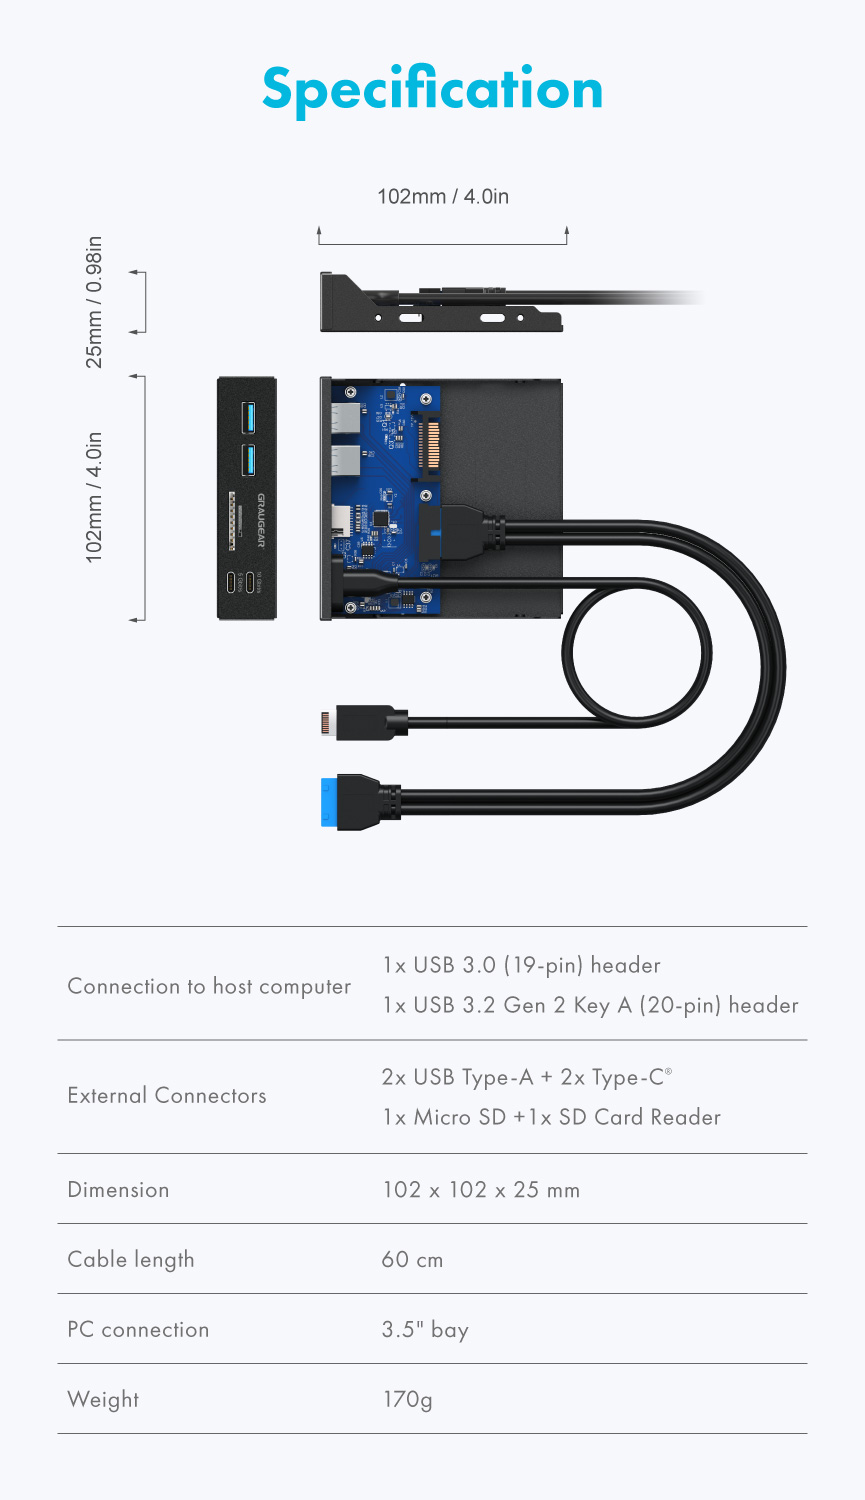 GRAUGEAR 3.5 Inch Front Panel USB Hub, Internal Metal USB Hub with USB3.2  Gen2 USB-C and USB 3.0 Ports, 20-Pin USB 3.2 Key-A Header Required, Fits